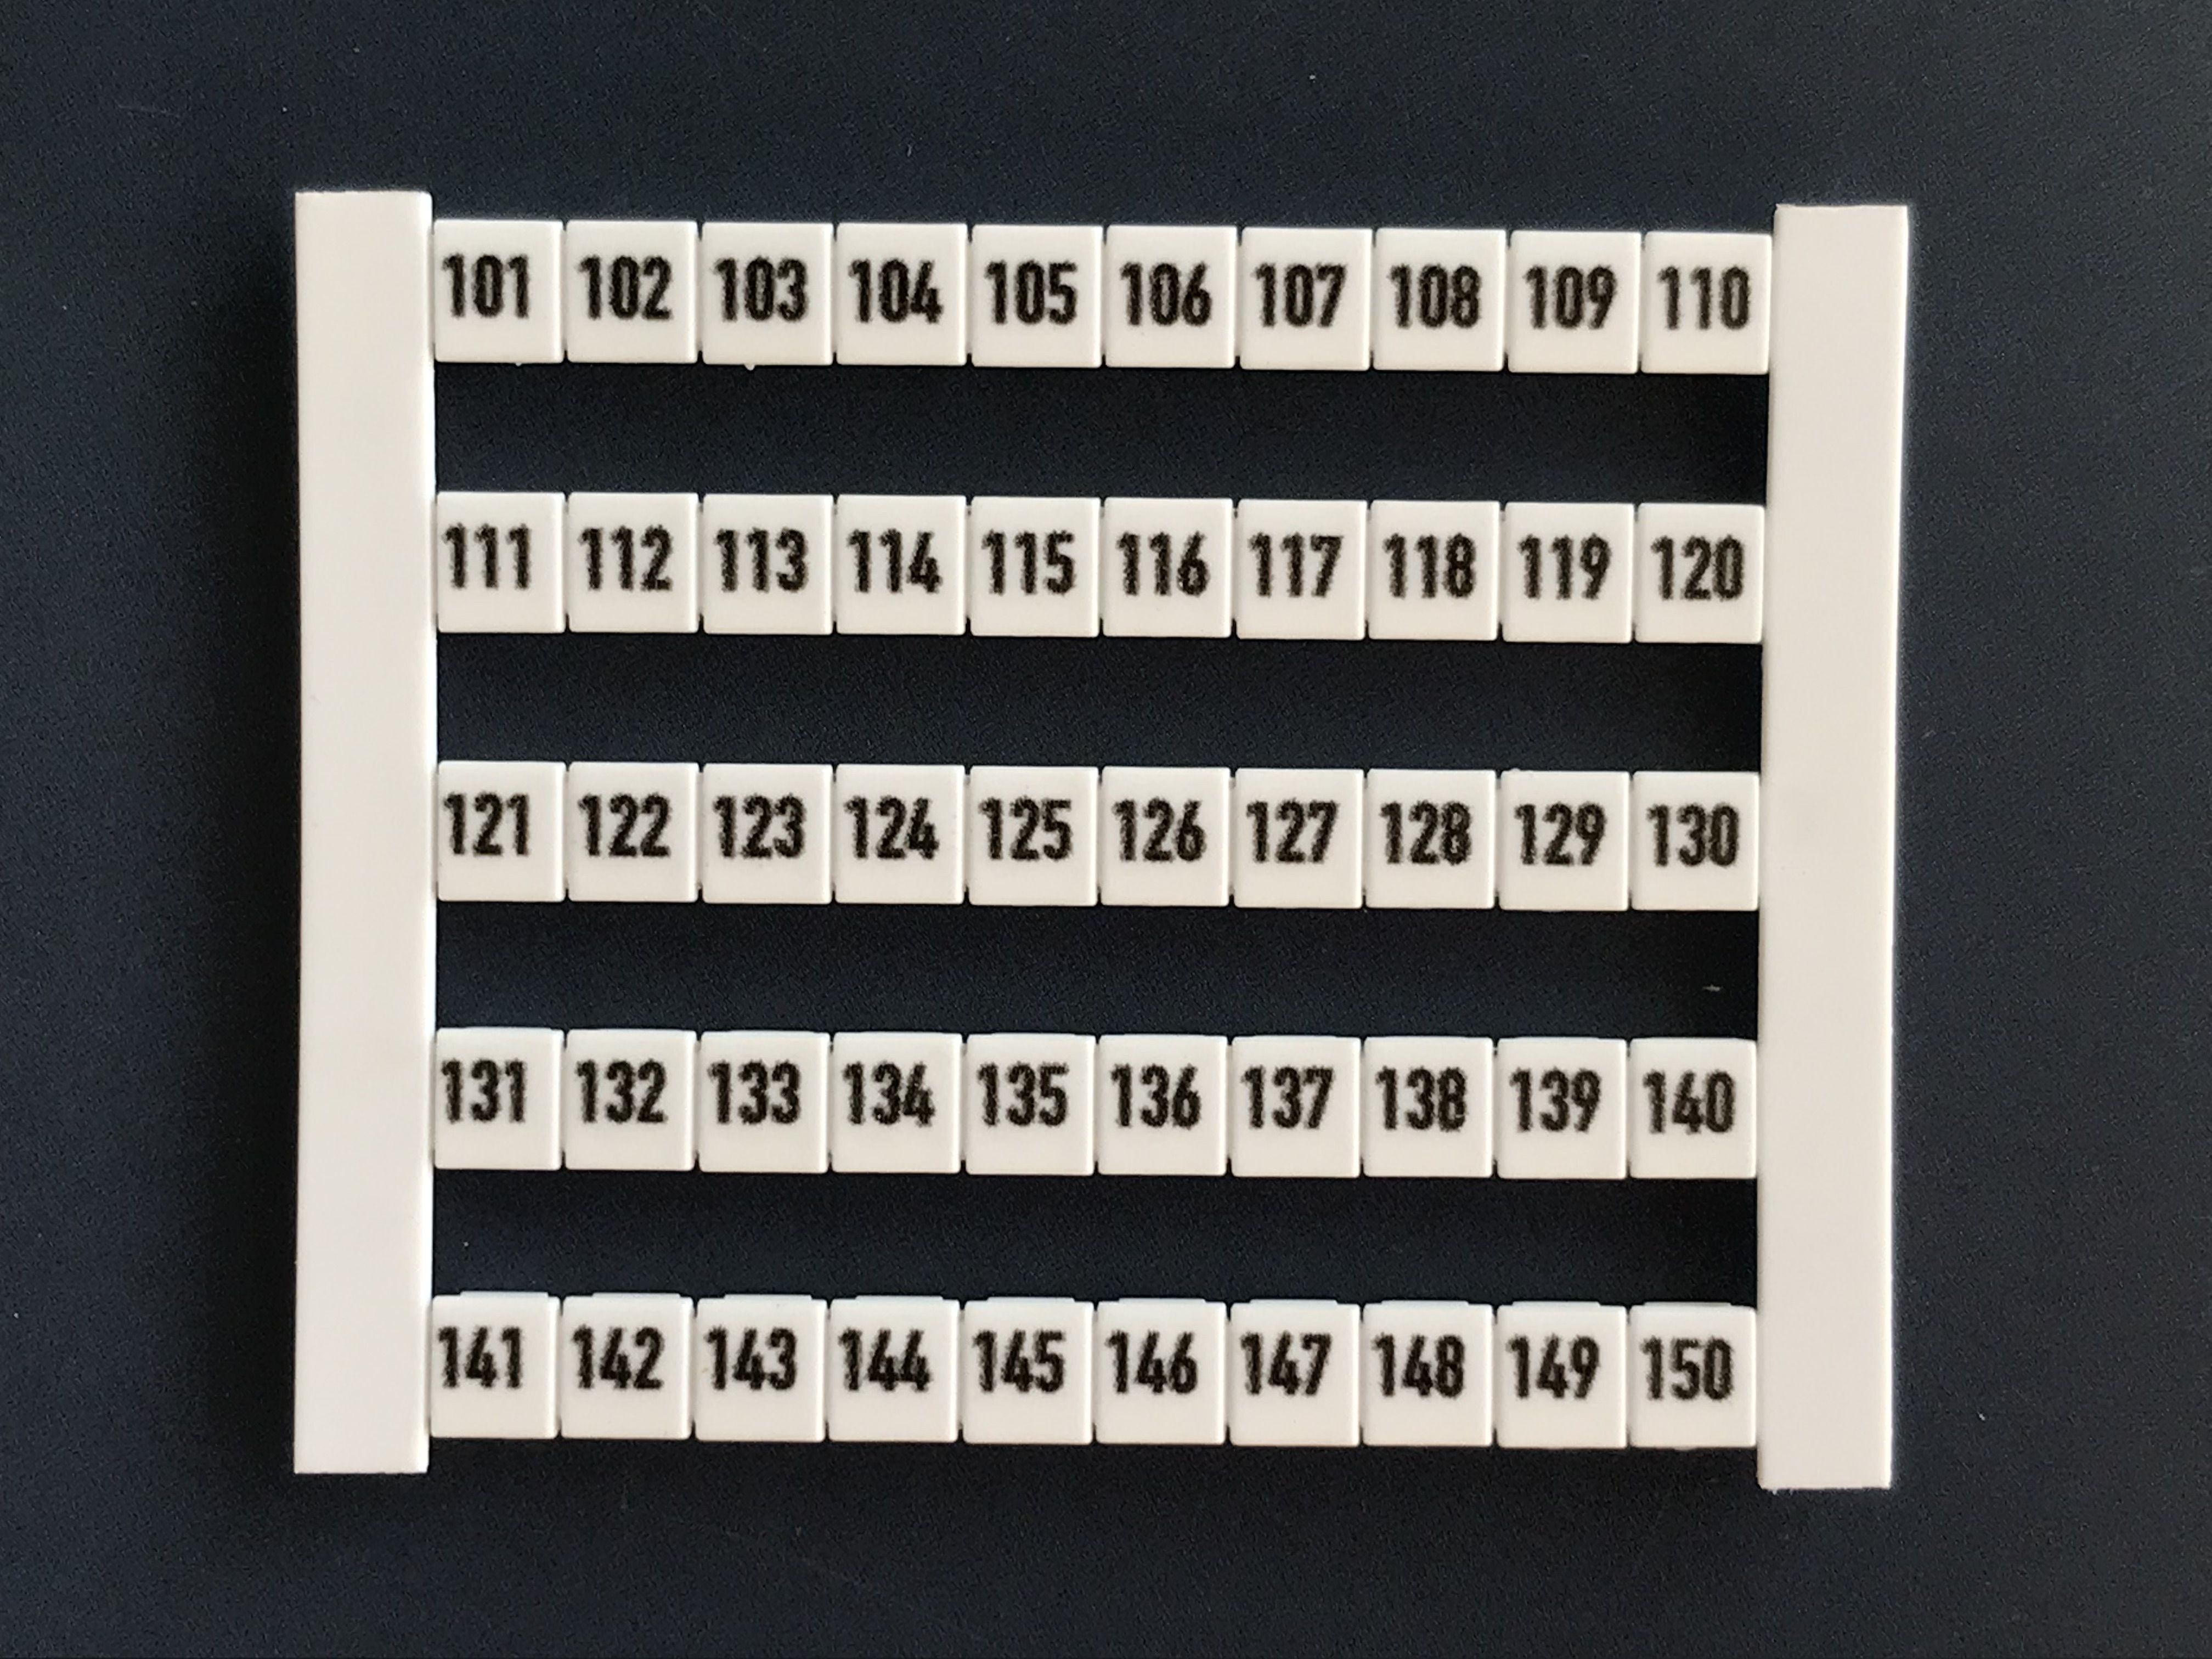 Weidmüller DEK5 FW 101-150 Klemmenmarkierung 5x5mm, Zahlen 101-150